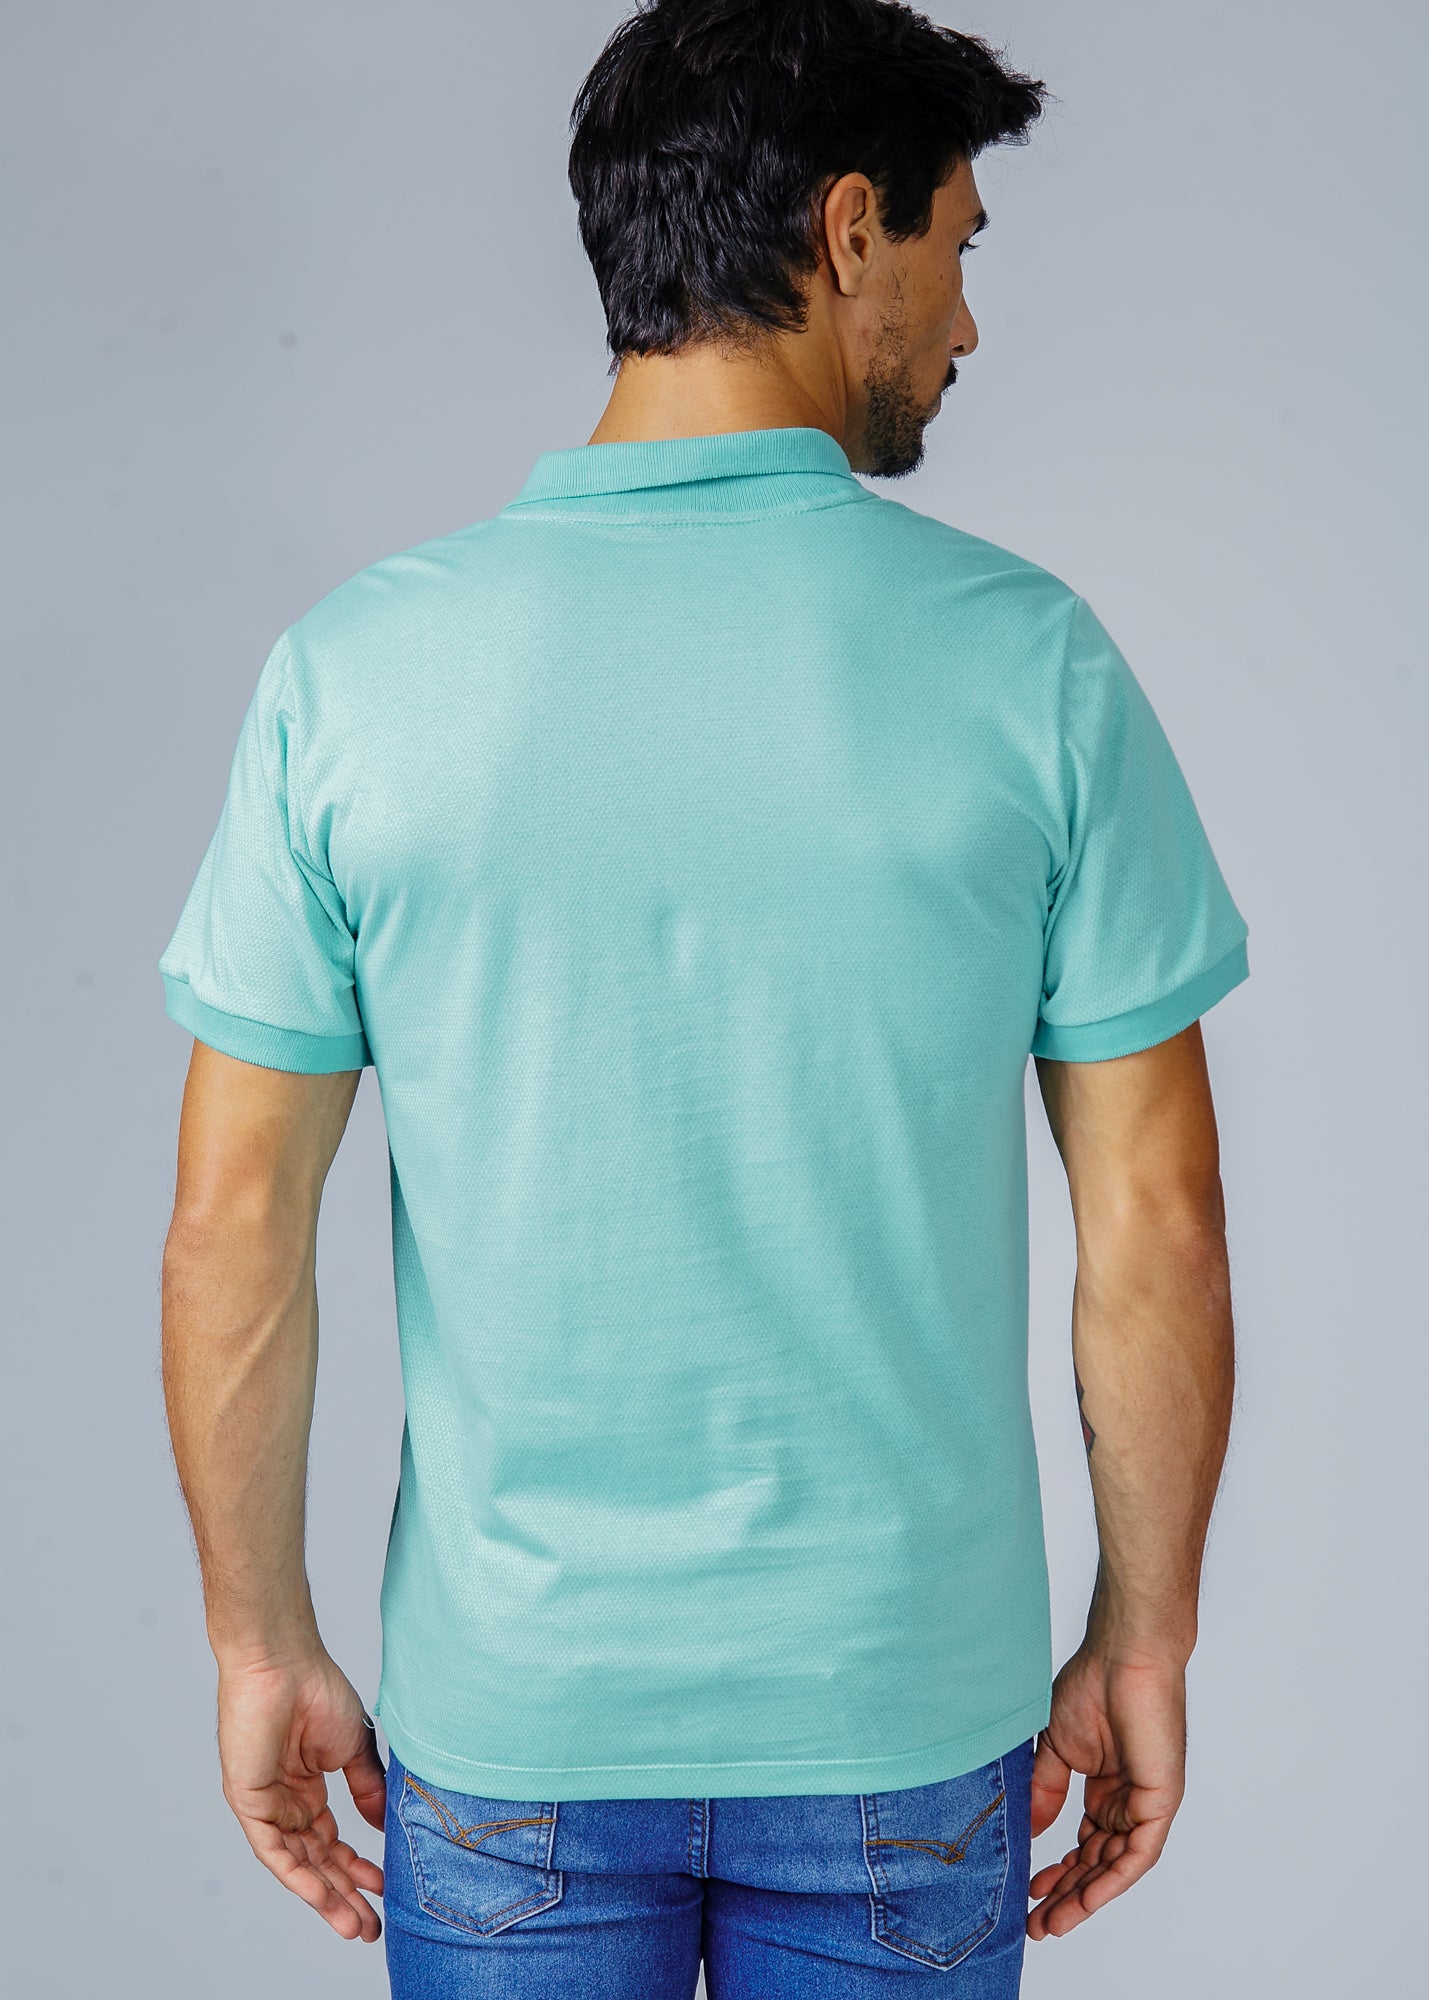 Camisa Polo Pontilhada - Verde Água